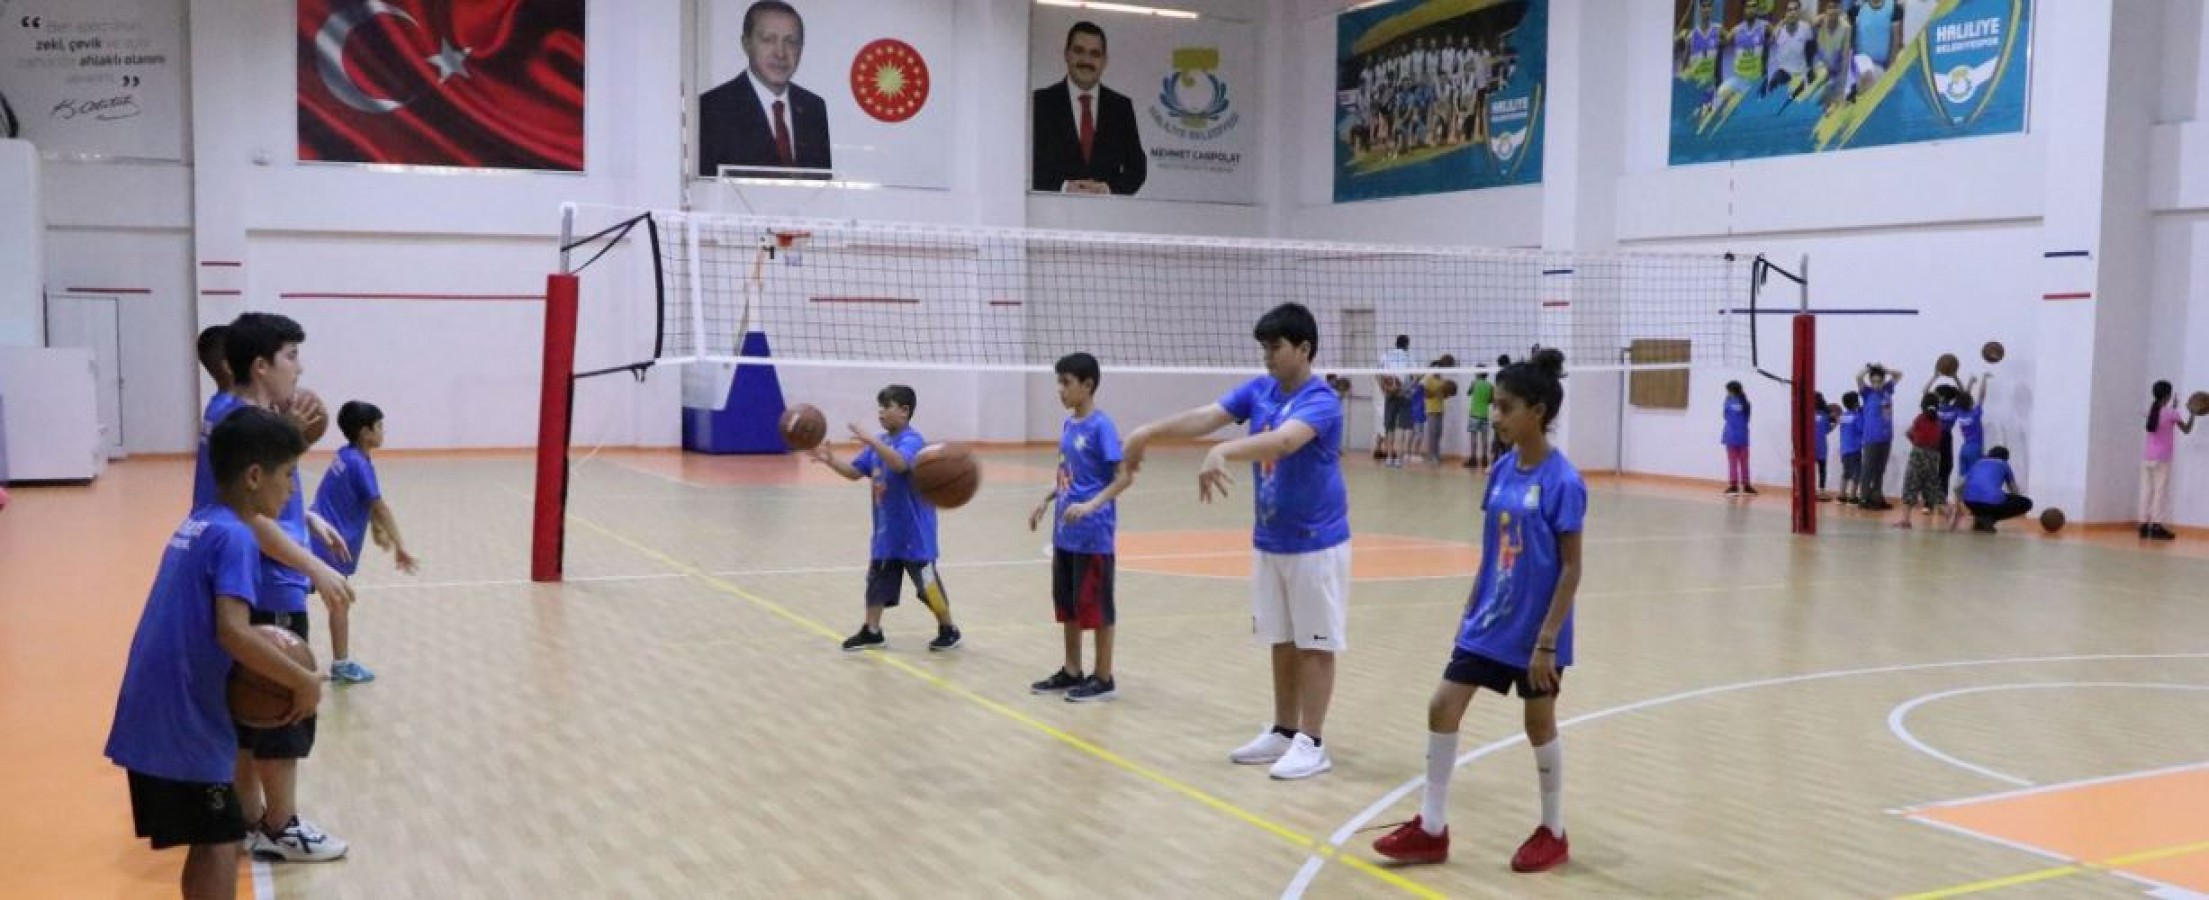 Haliliye'de Çocuklara Spor Alışkanlığı Kazandırılıyor